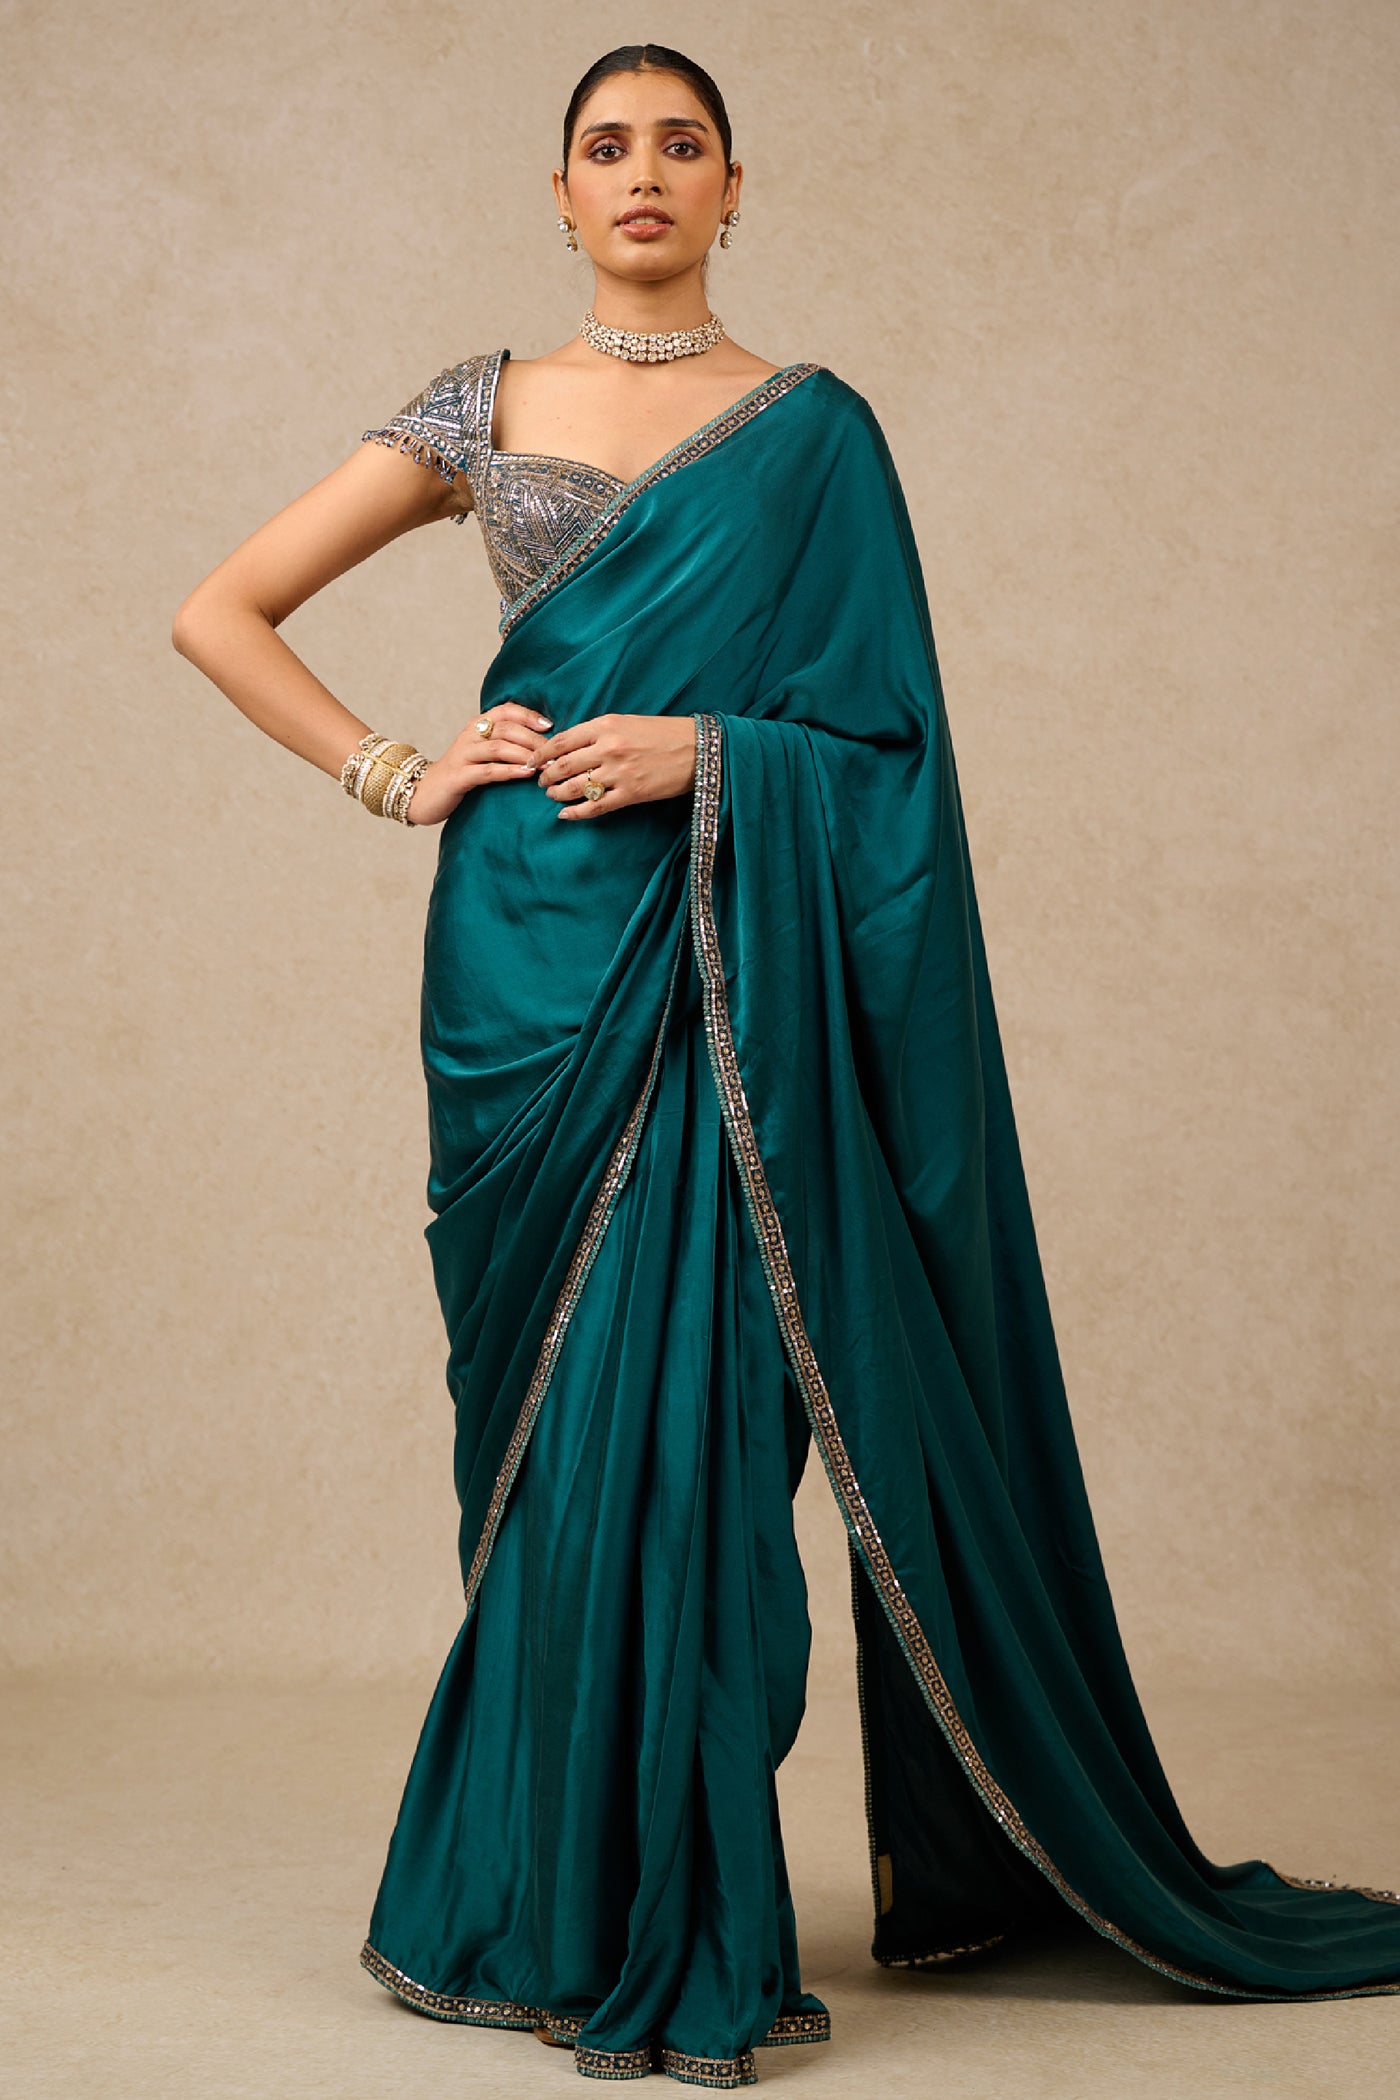 Tarun Tahiliani Saree Blouse Teal indian designer wear online shopping melange singapore